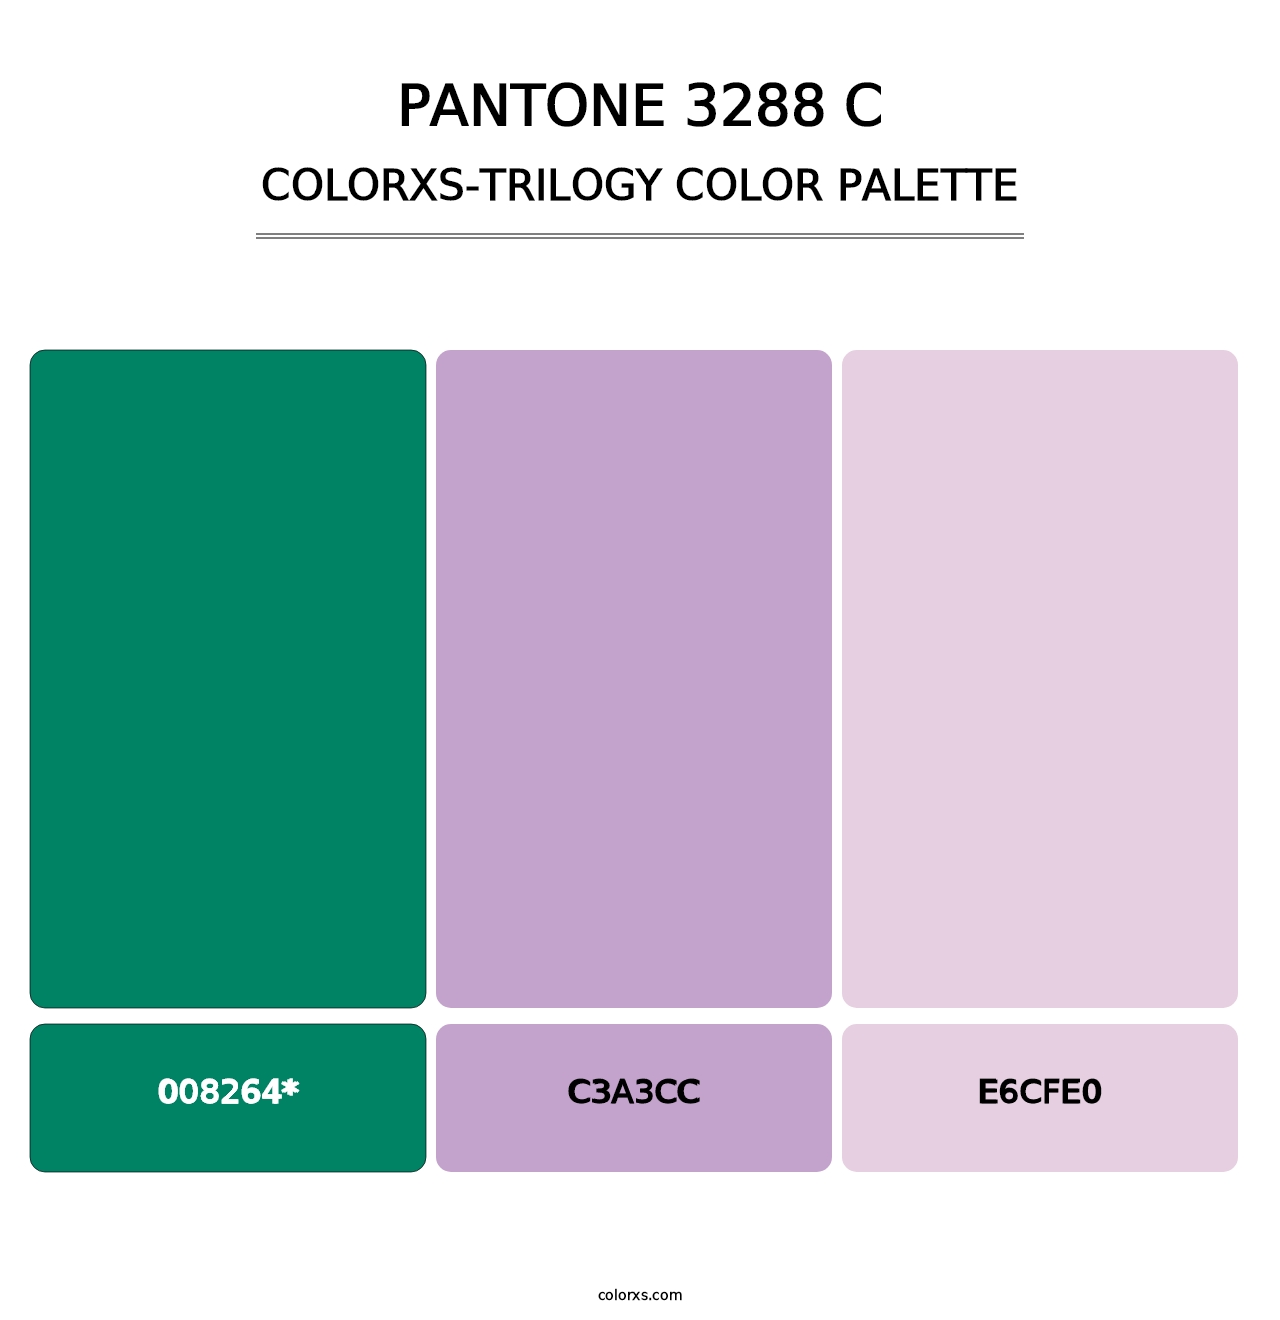 PANTONE 3288 C - Colorxs Trilogy Palette